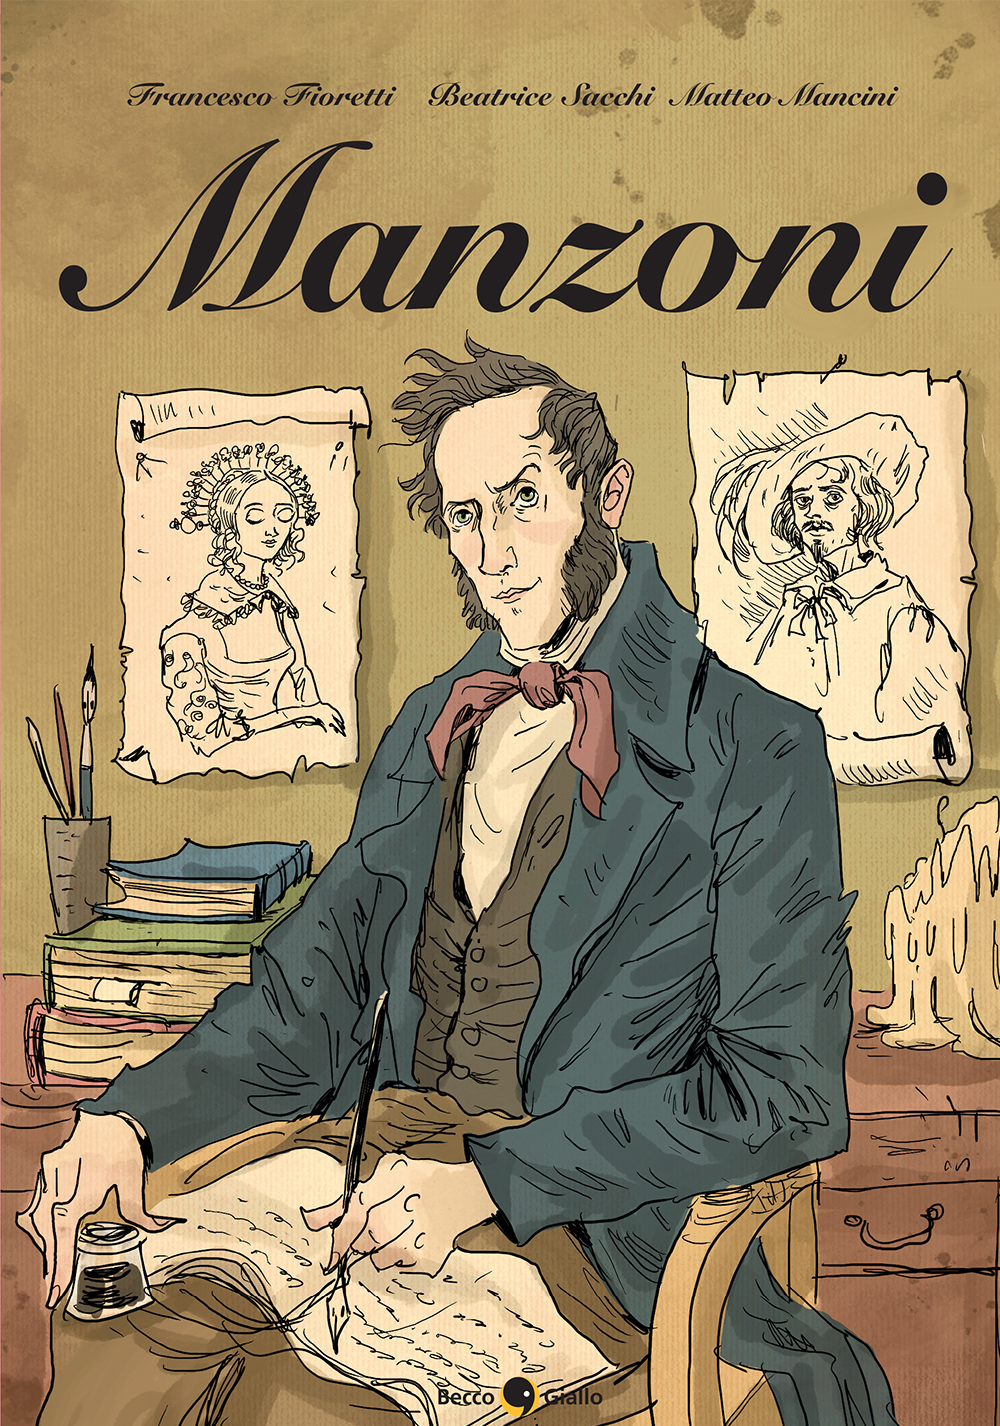 Alessandro Manzoni: una biografia a fumetti